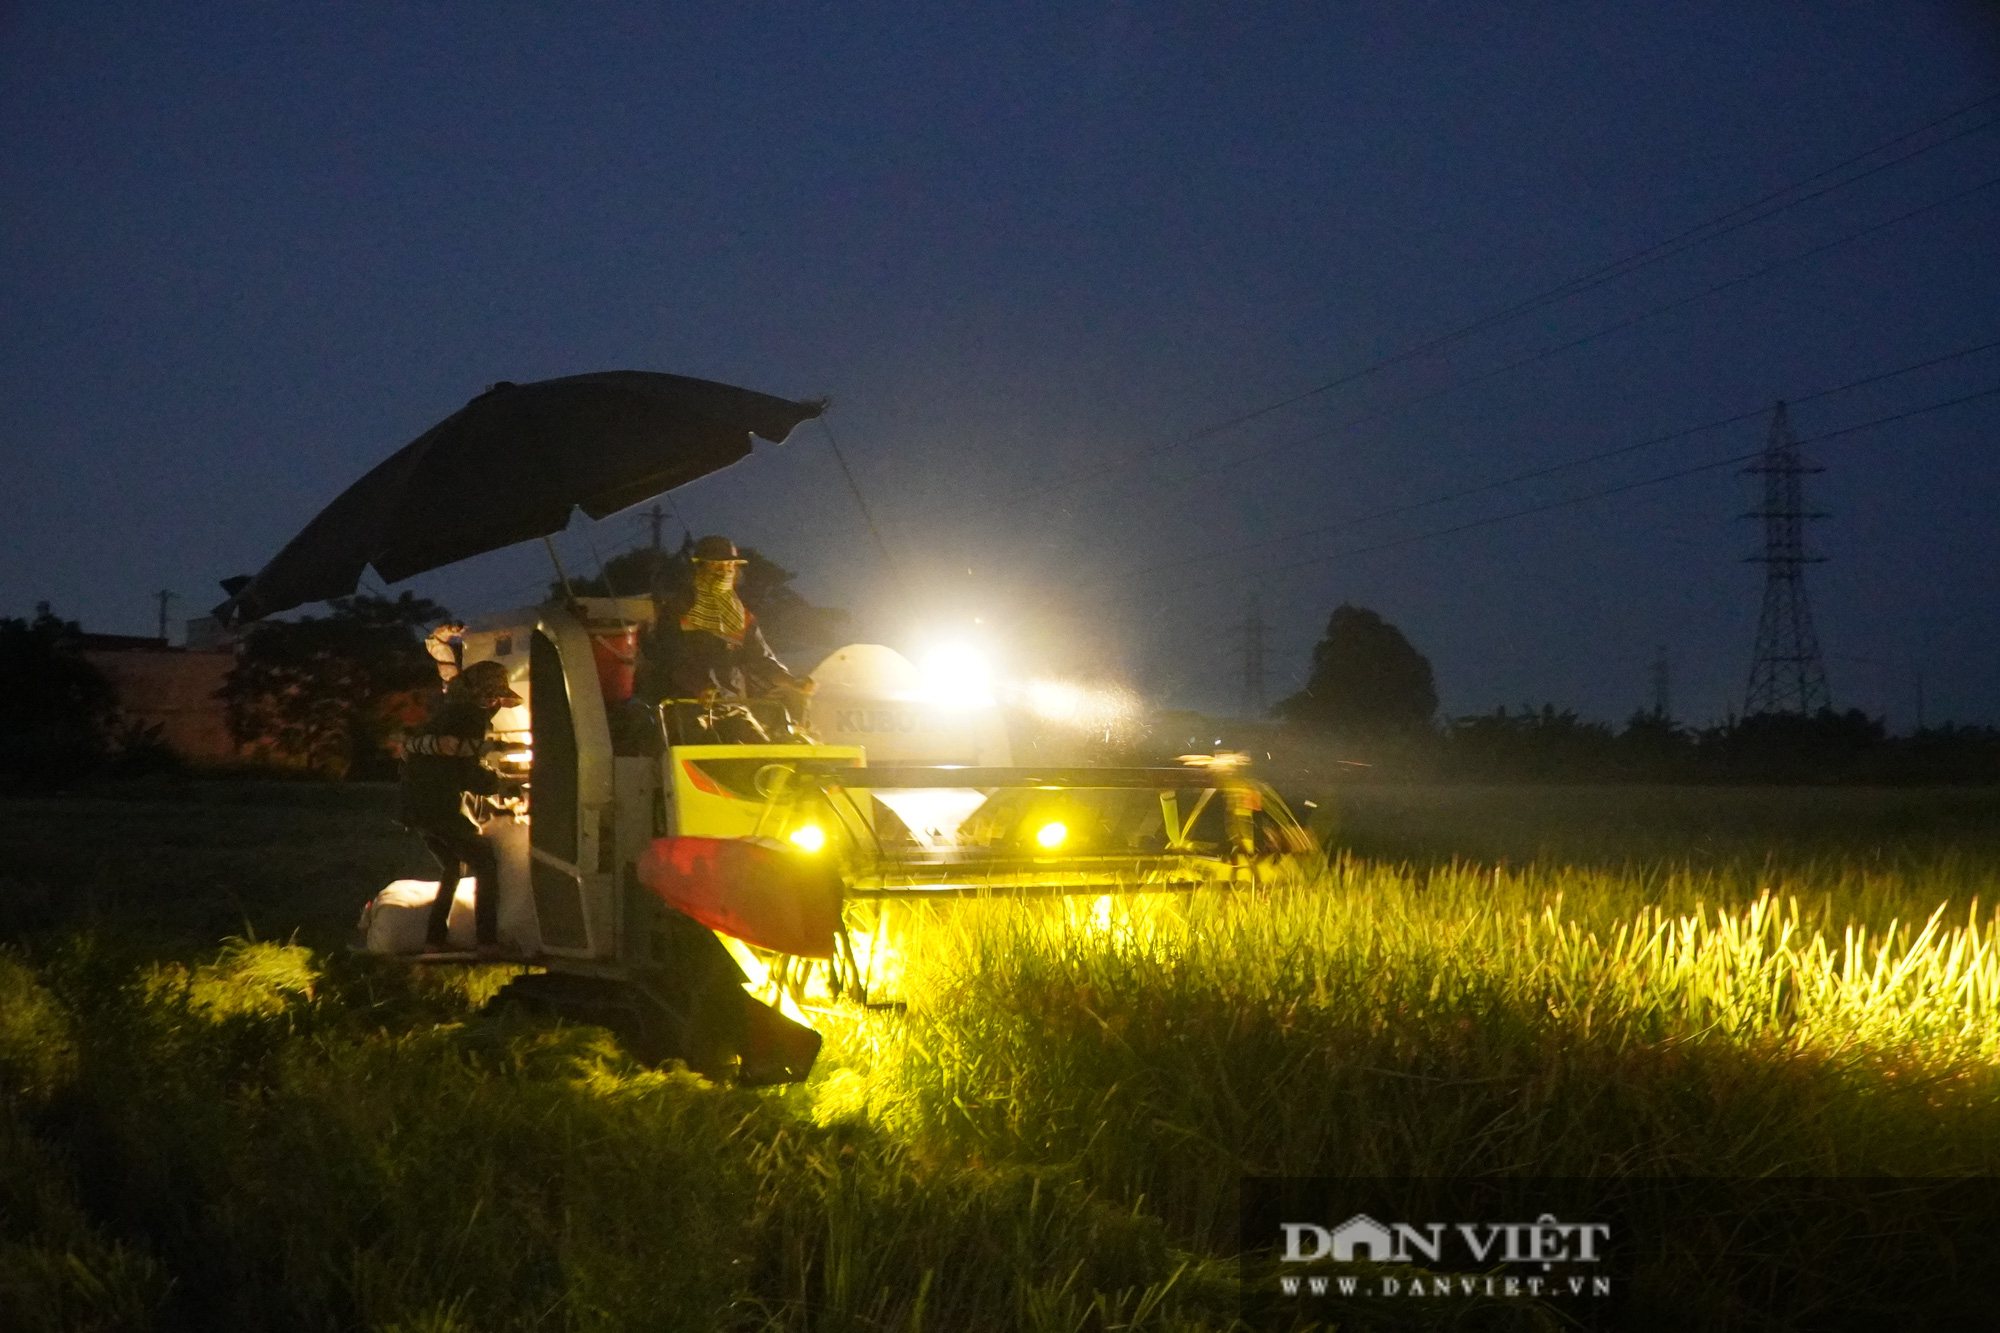 Bắc Ninh: Cận cảnh gắt lúa trong đêm giúp dân vùng tâm dịch Covid-19 Khắc Niệm - Ảnh 1.